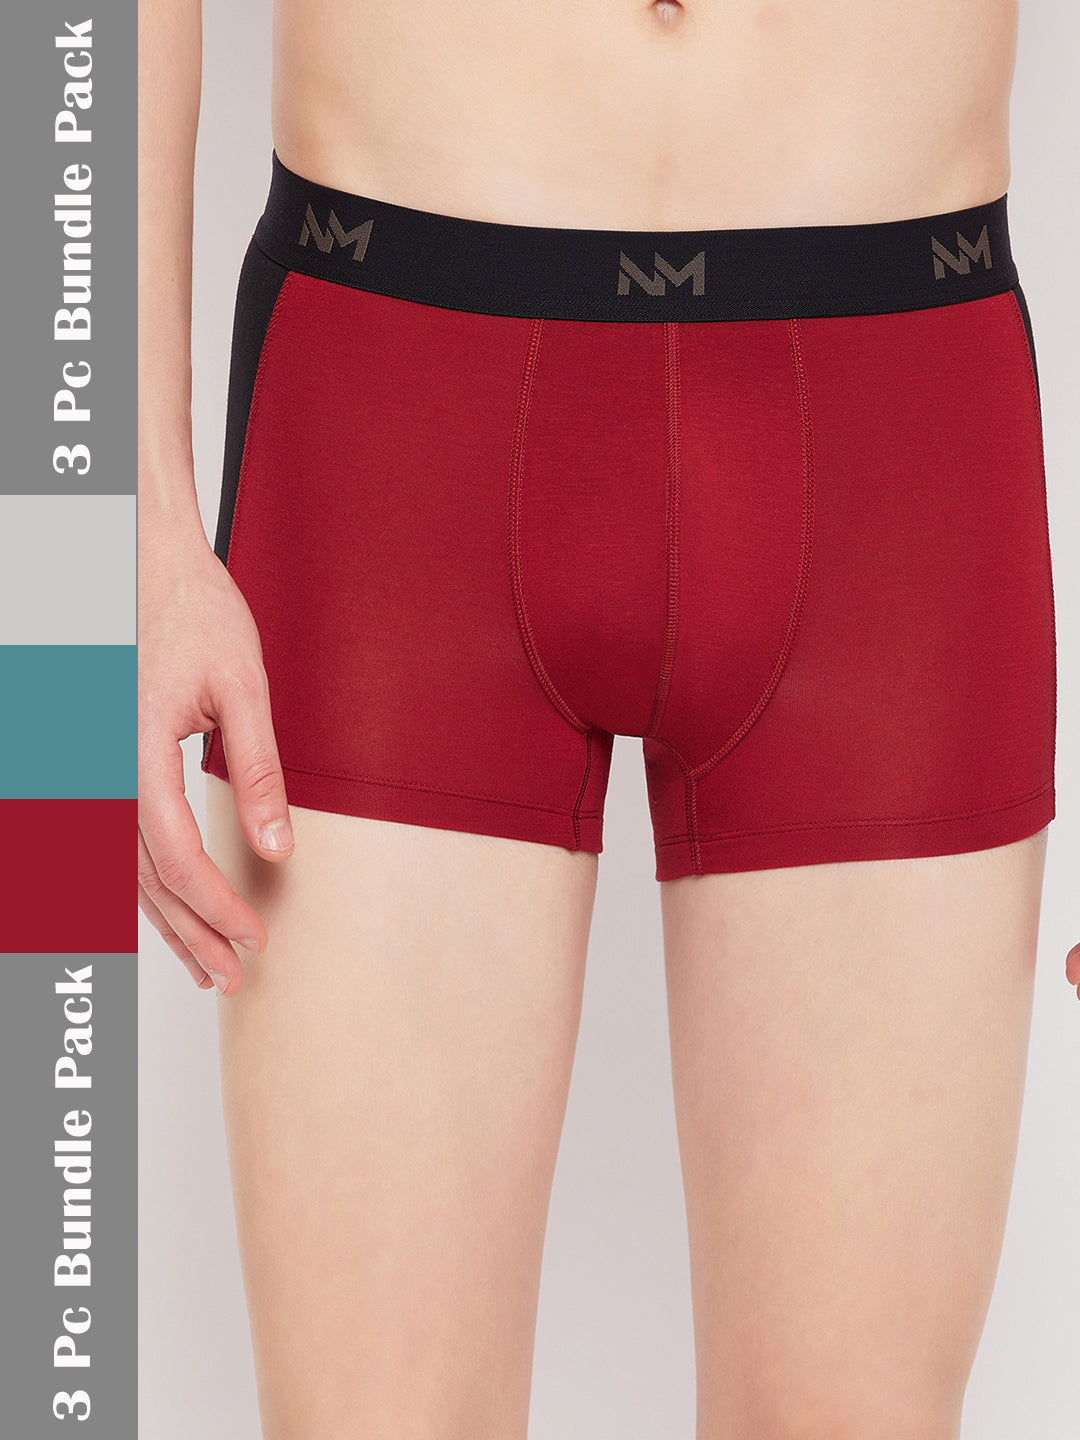 Neva solid short trunks underwear for men